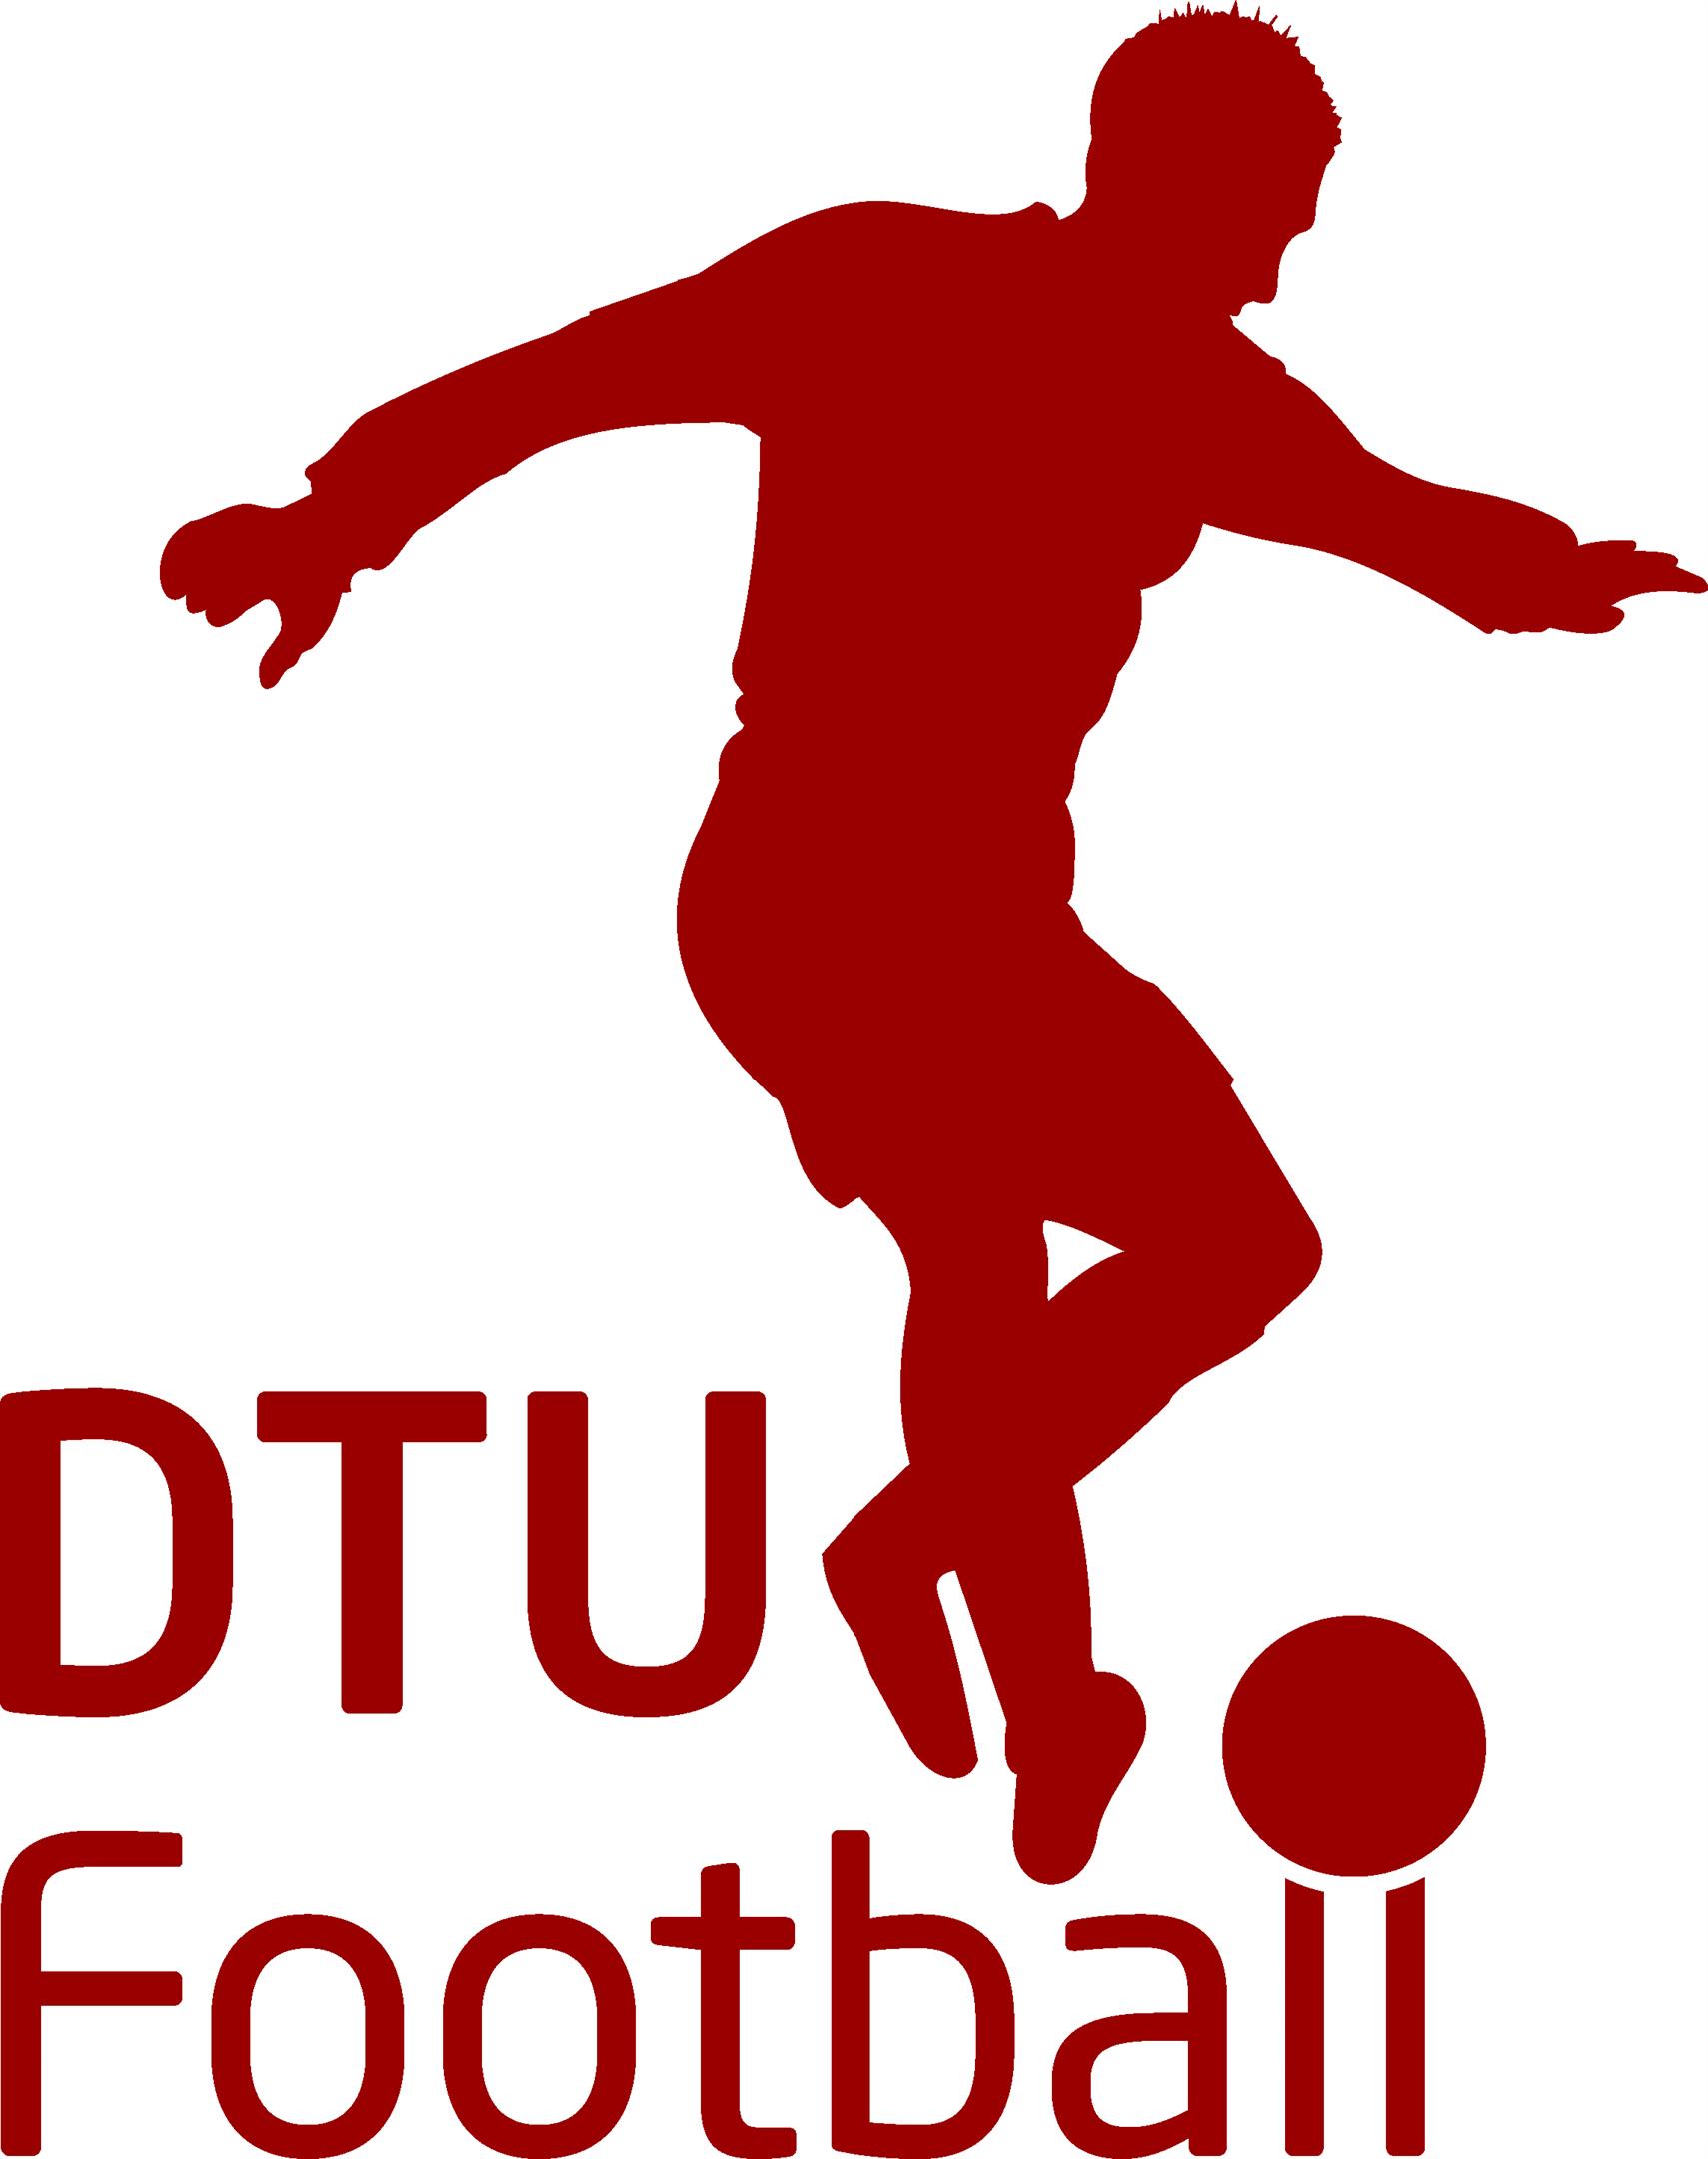 DTU_Football_grafik_red_rgb.jpg